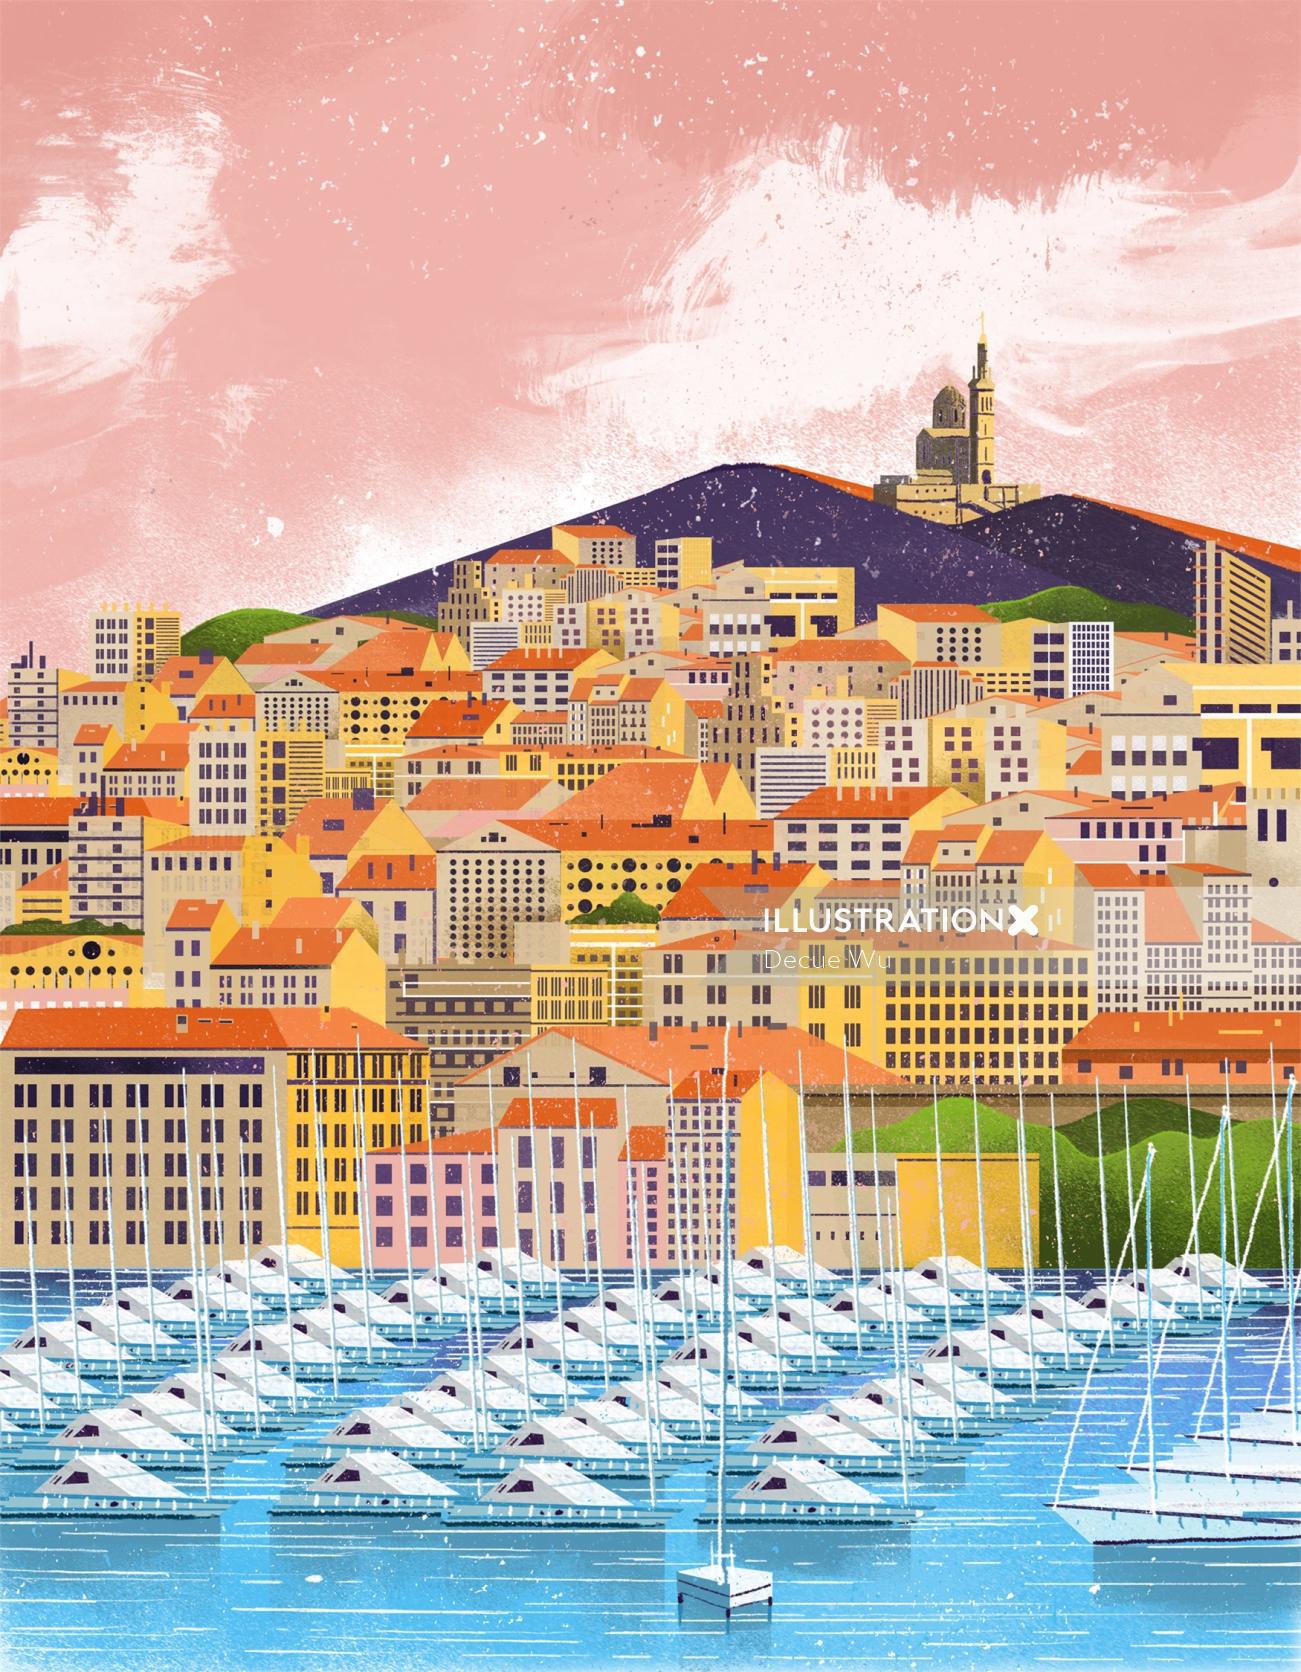 Uma ilustração da cidade de Marselha